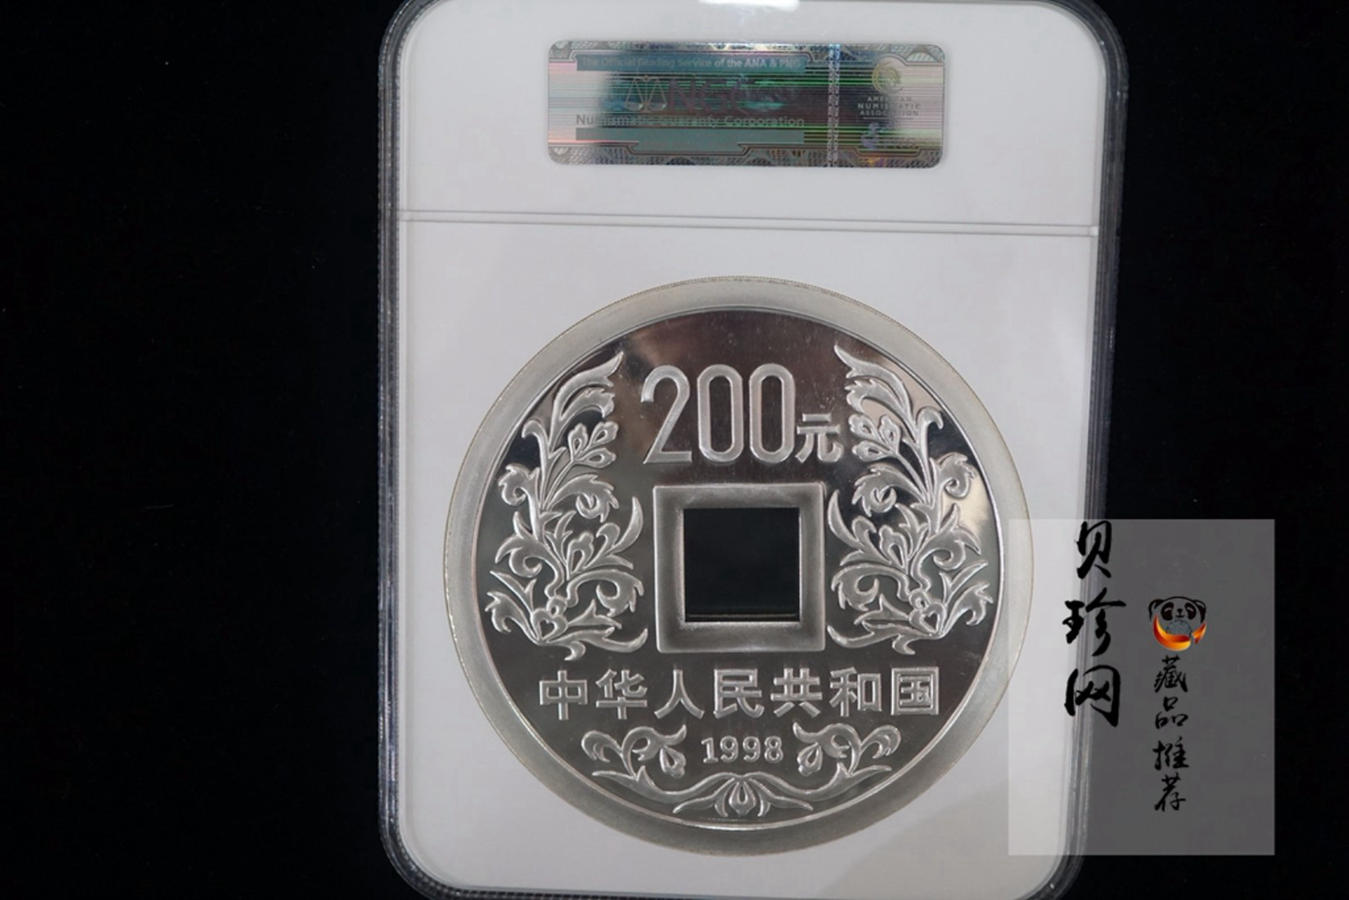 【981503】1998年大唐镇库金钱金银纪念币1公斤精制银币